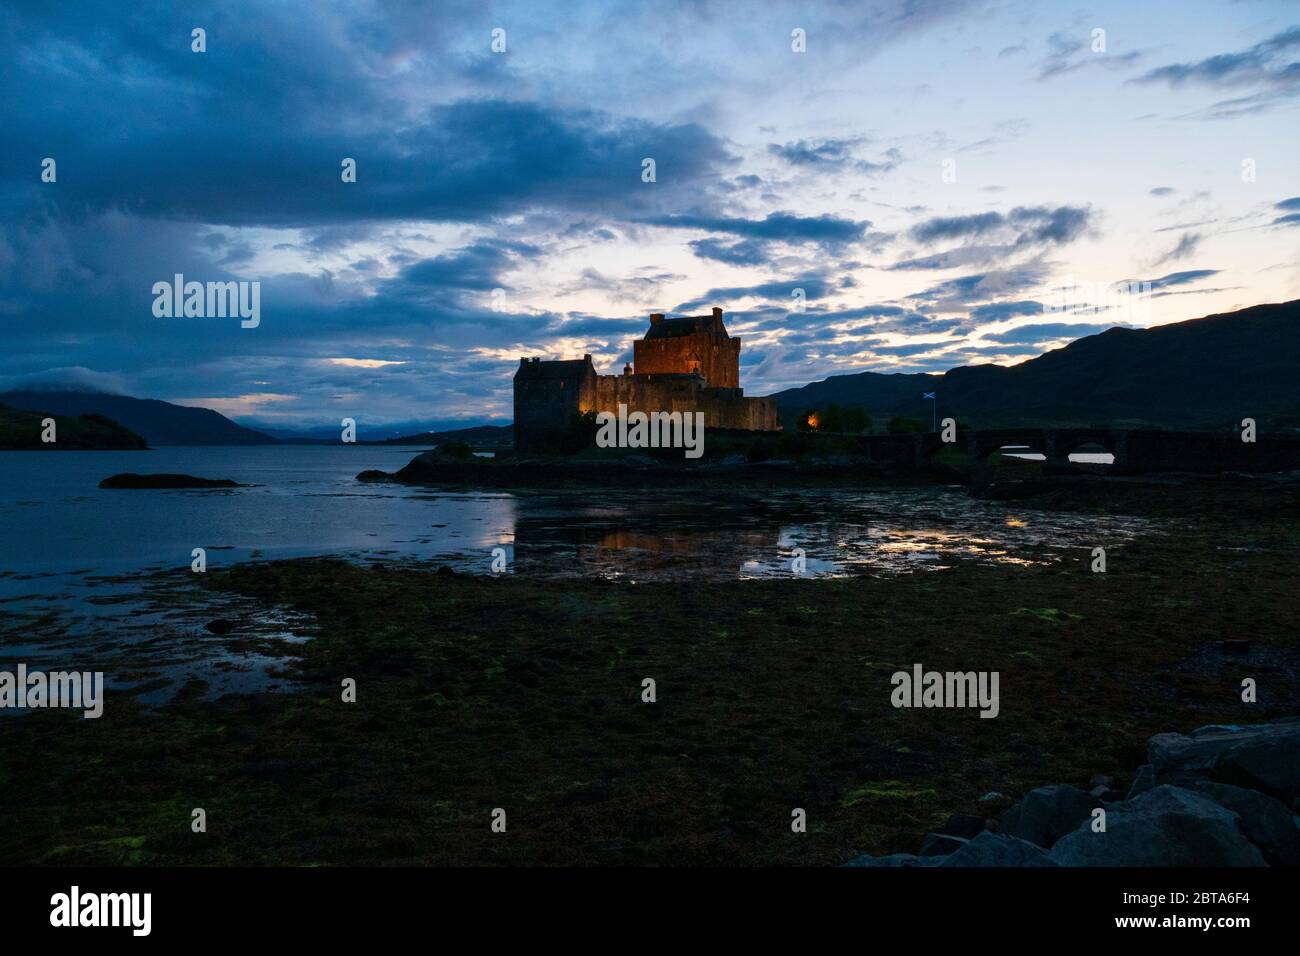 Eilean Donan Castle, schottische Burg in den Highlands von Schottland, beleuchtet bei Nacht Foto Stock